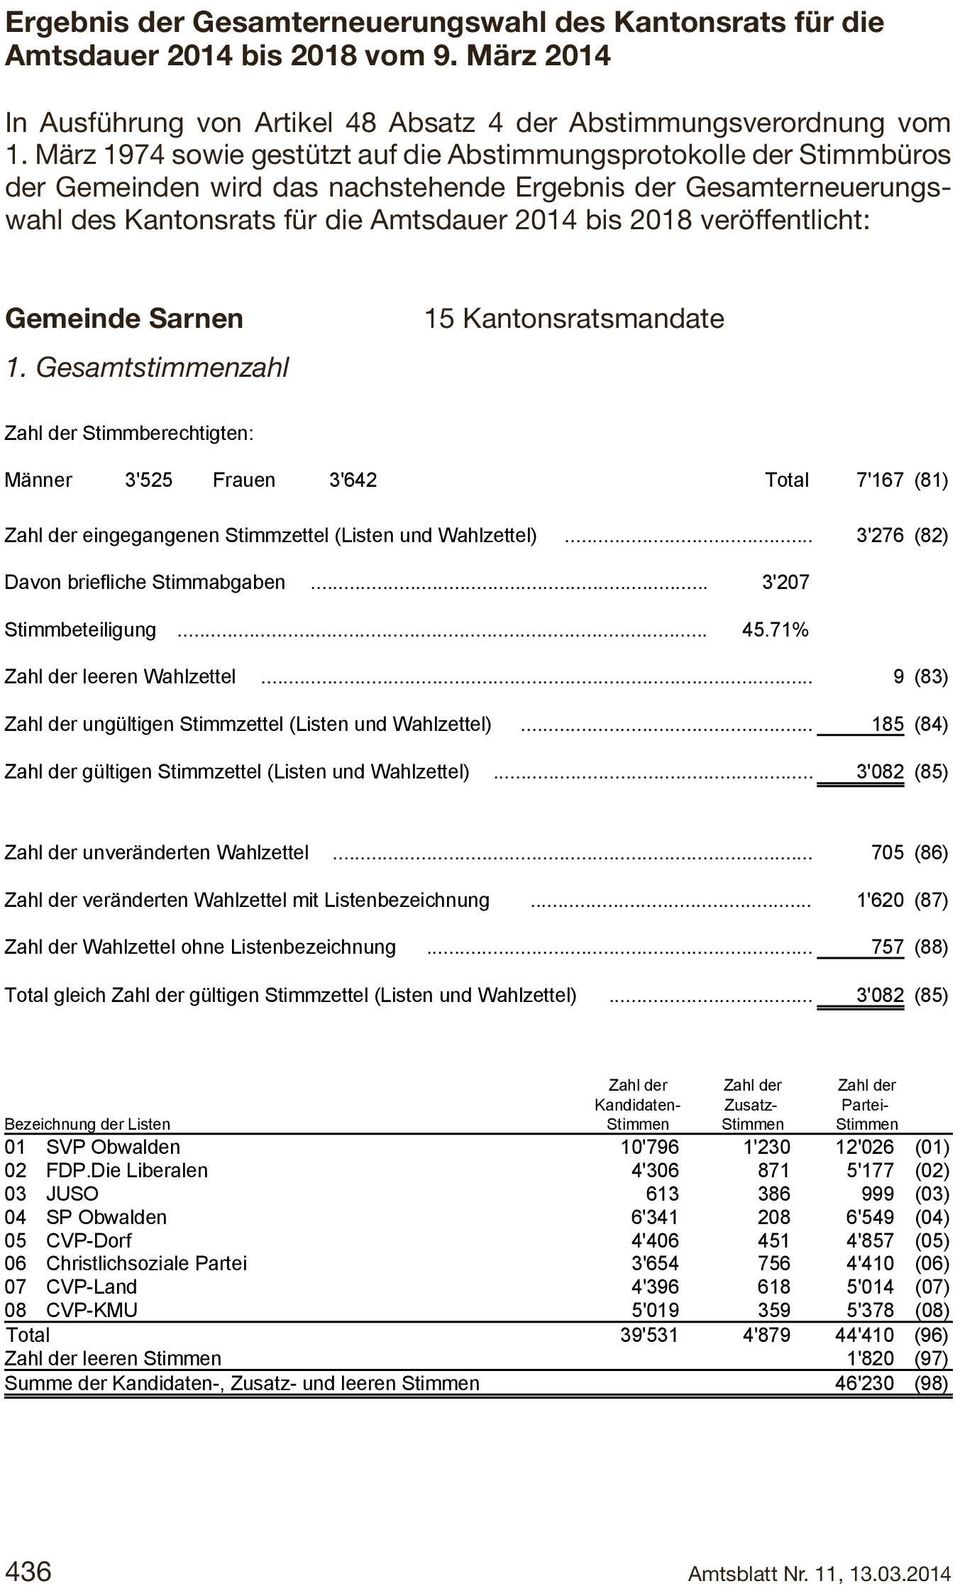 04 Gmde In Ausführung von Artikel Kantonsratswahlen 48 Absatz Gemeinde 4 der Abstimmungsverordnung Sarnen vom 0 Gemeinde: Sarnen Gmde.